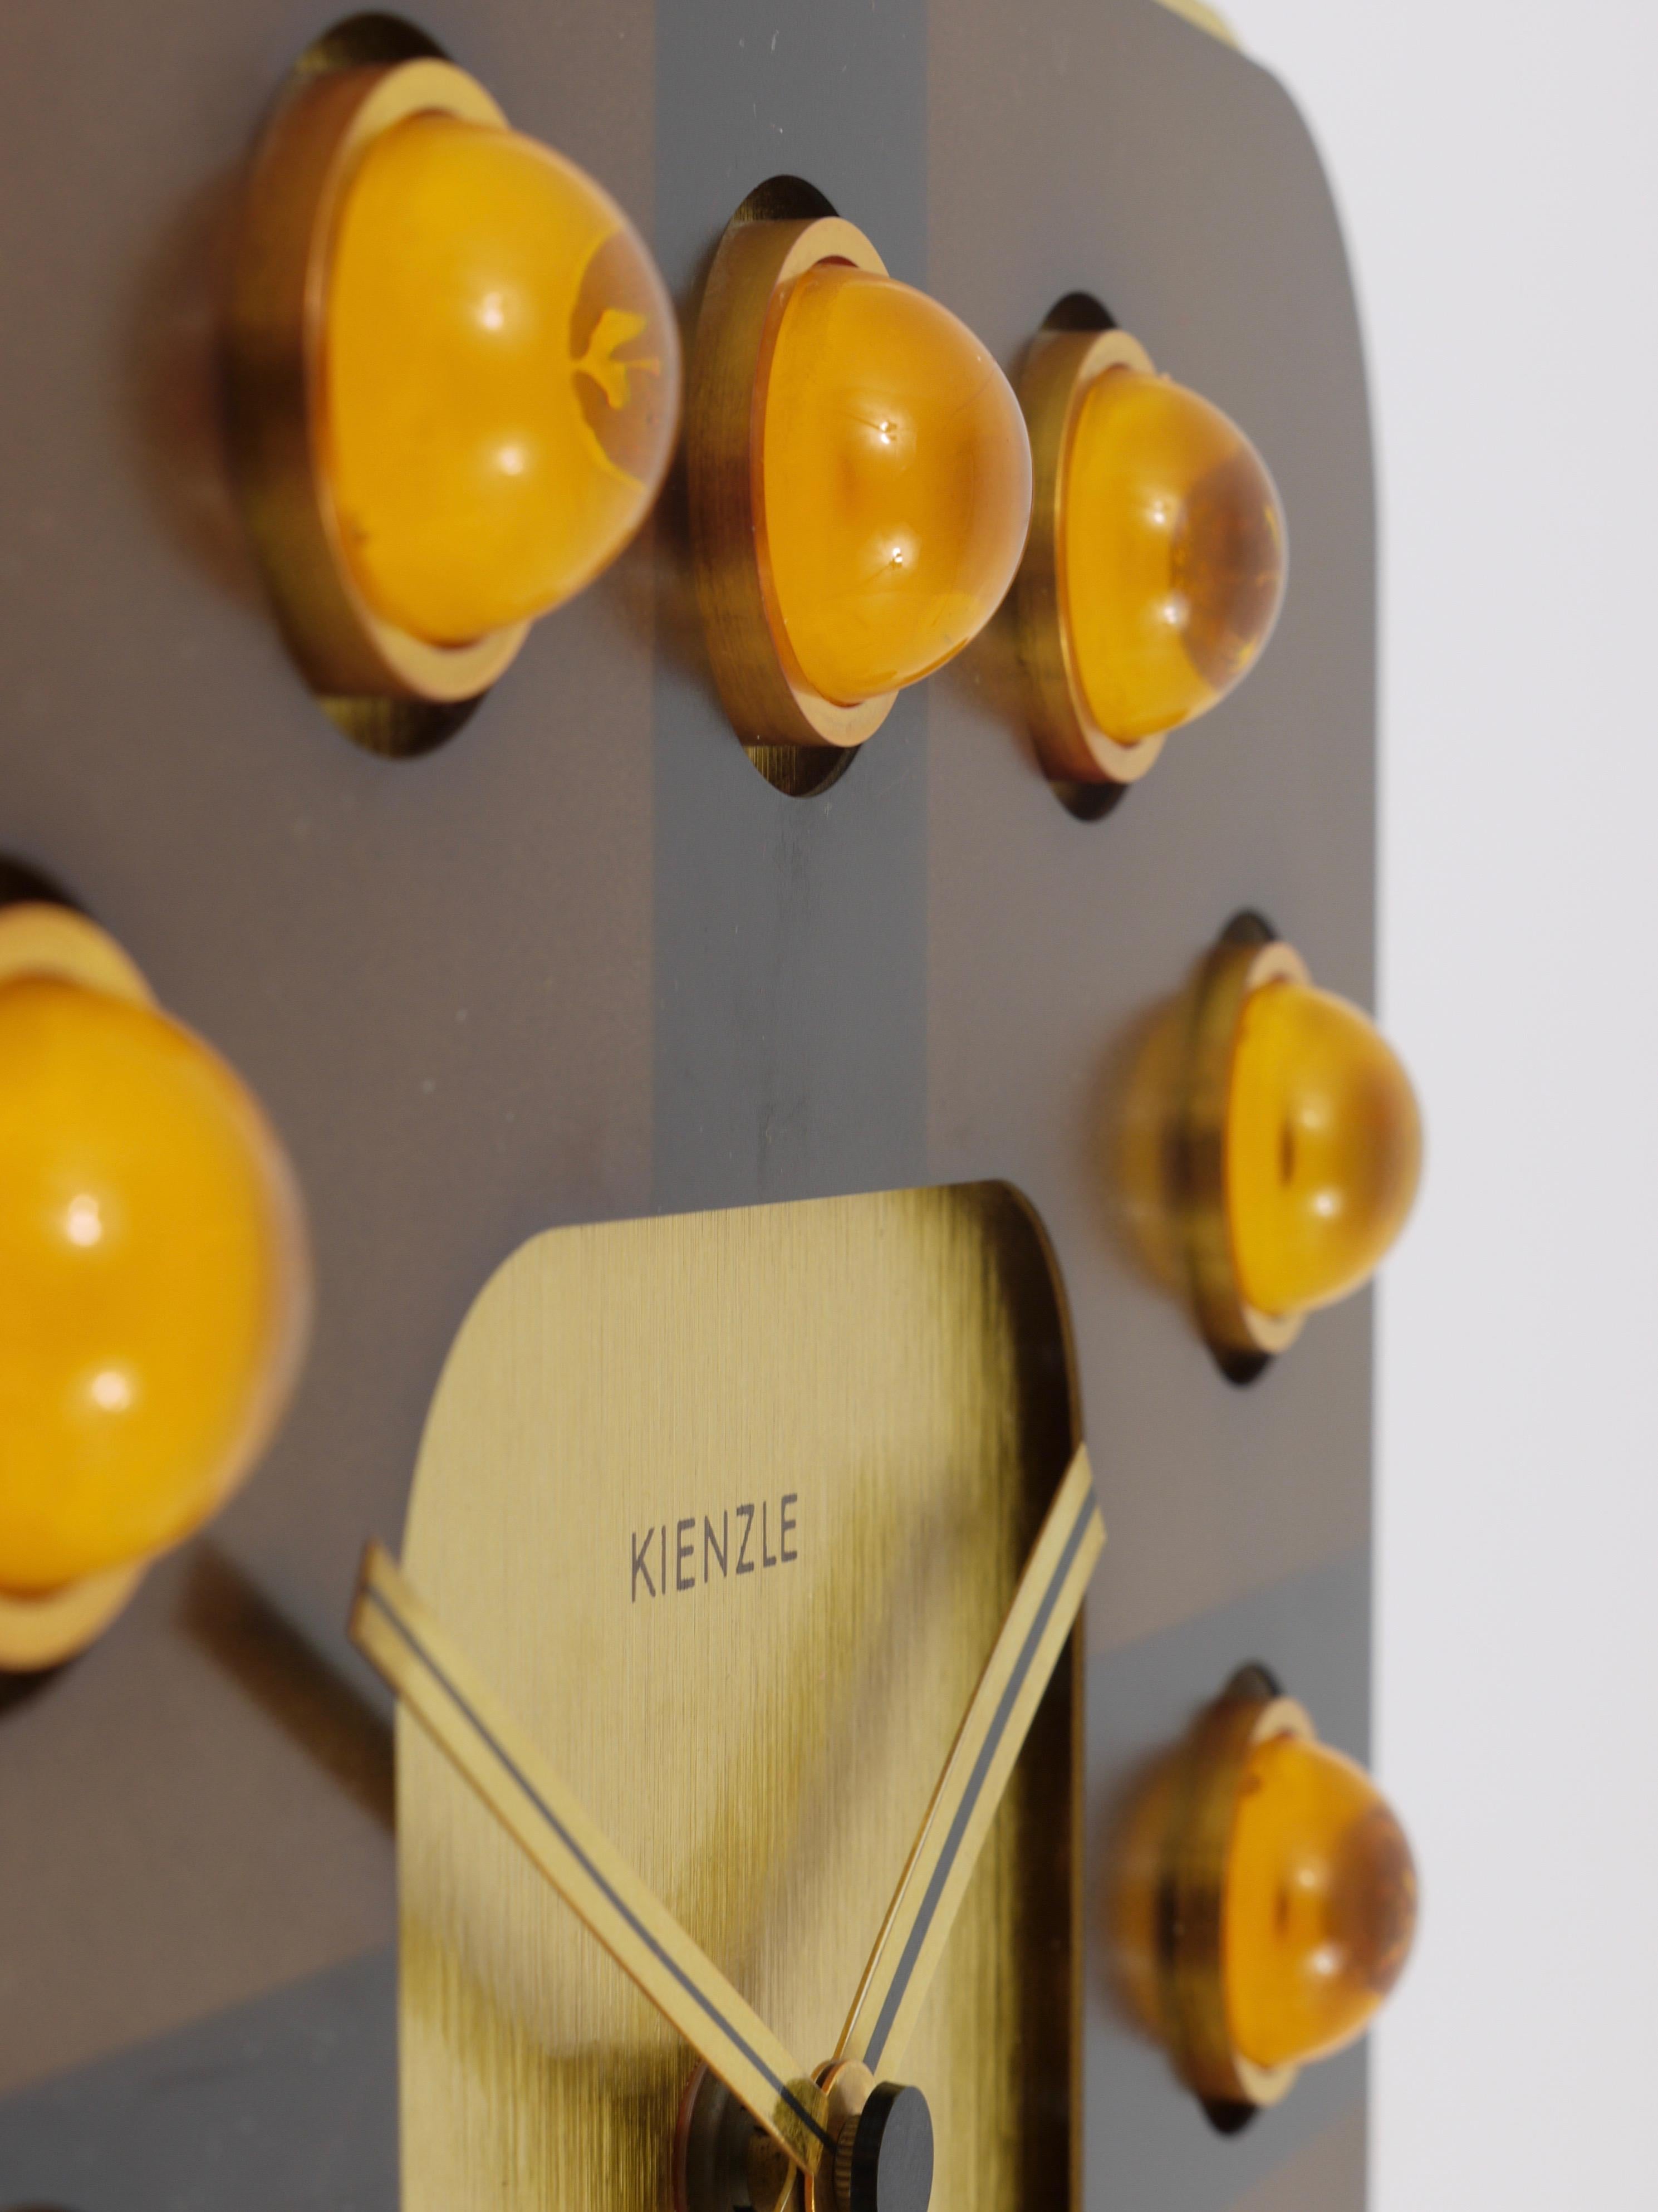 Eine schöne quadratische 1970er Hollywood Regency Wanduhr von Kienzle Deutschland. Die Uhr hat ein goldenes Gehäuse:: ein Zifferblatt aus braun eloxiertem Aluminium mit schönen halbkugelförmigen Indizes aus durchsichtigem orangefarbenem Acryl.